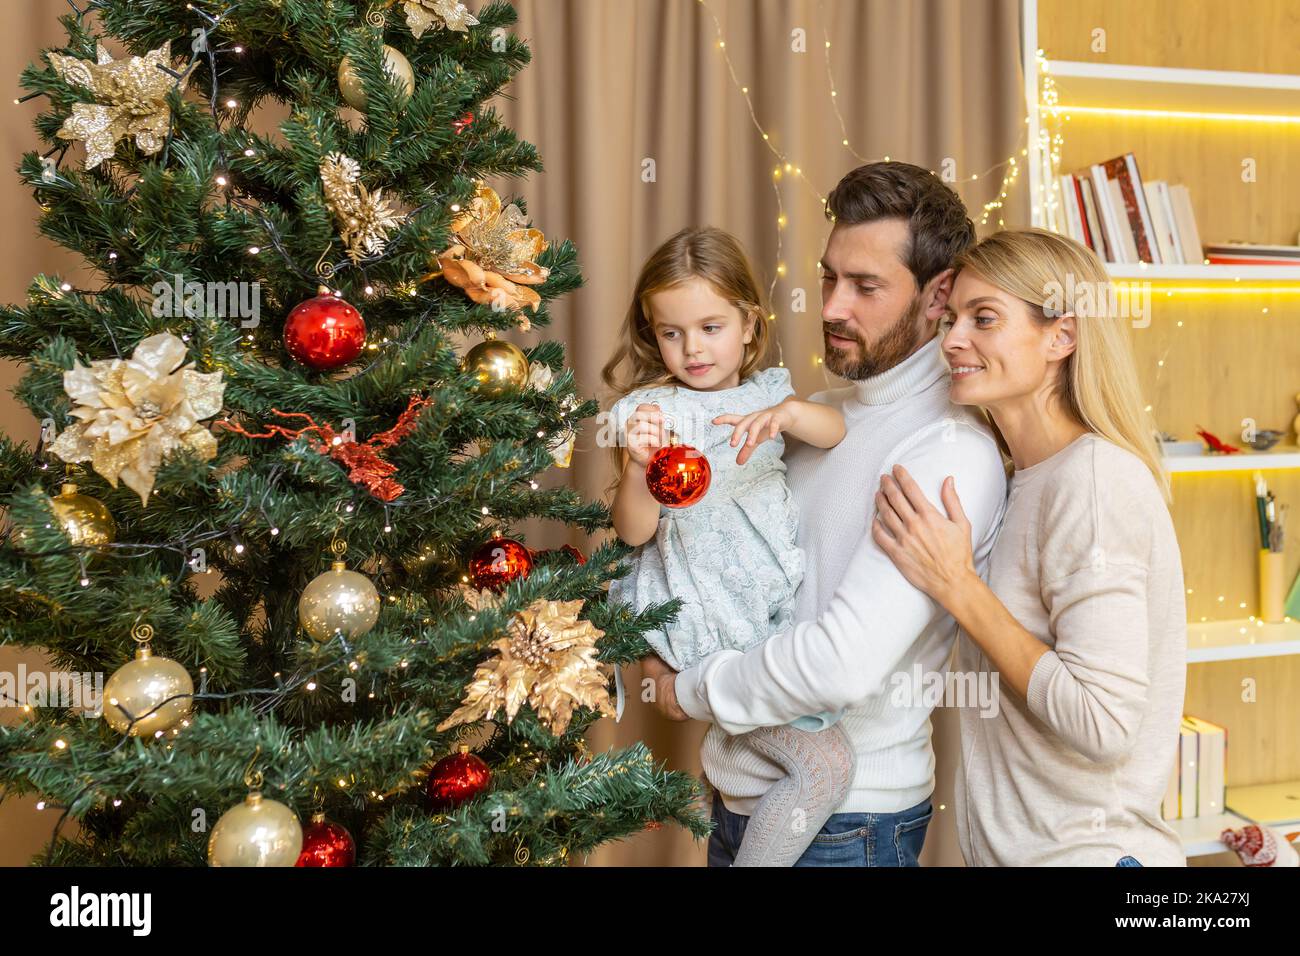 Une jeune famille heureuse décorera un arbre de Noël pour les vacances de Noël. Papa tient sa fille dans ses bras, la fille porte un jouet, la maman embrasse le papa. Banque D'Images